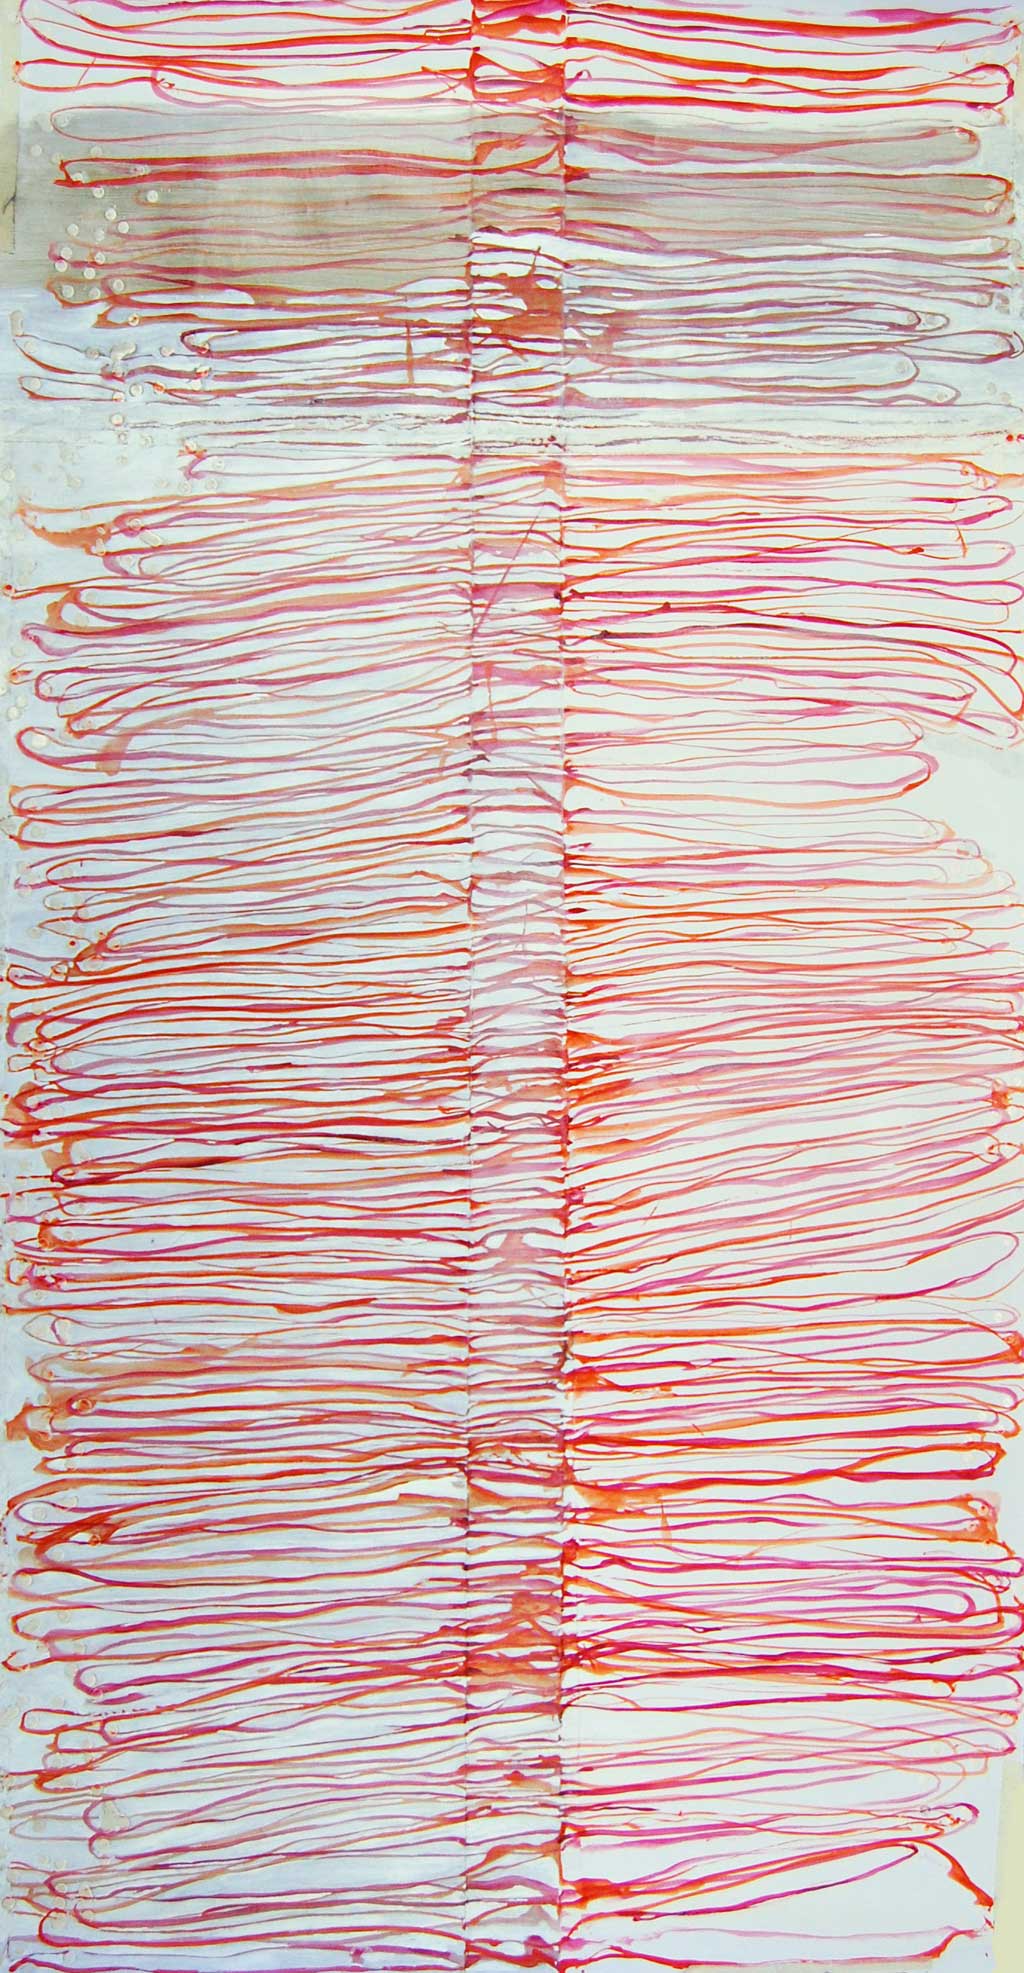 ligare I, gemengde techniek op papier, 110x57cm, 2010